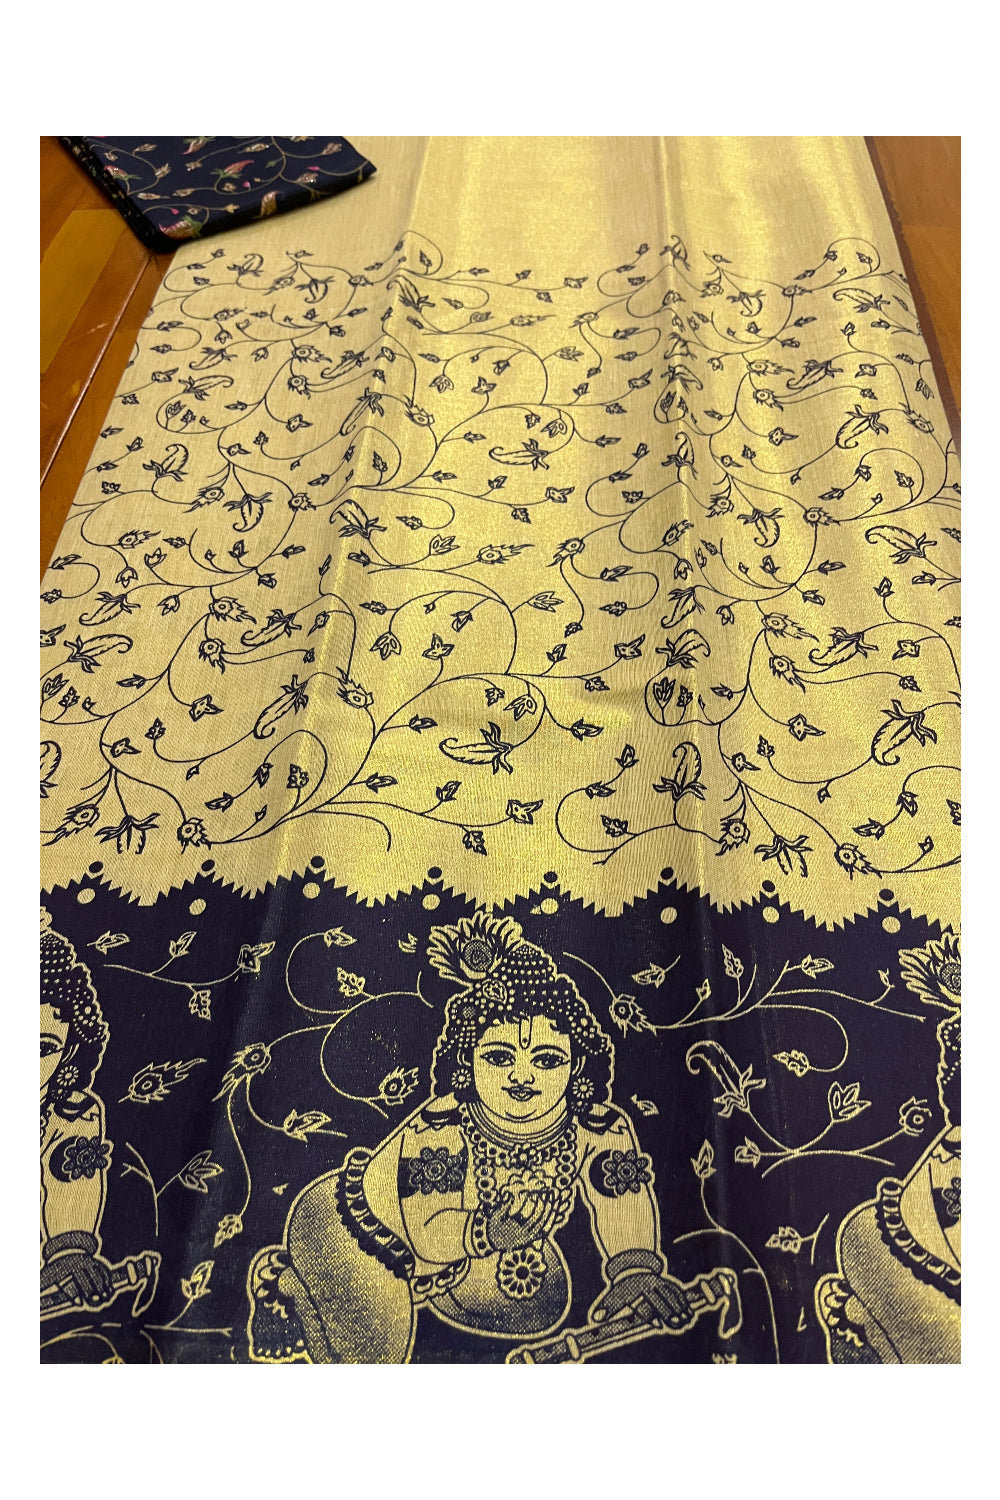 Kerala Tissue Block Printed Pavada and Dark Blue Designer Blouse Material for Kids 3 Meters